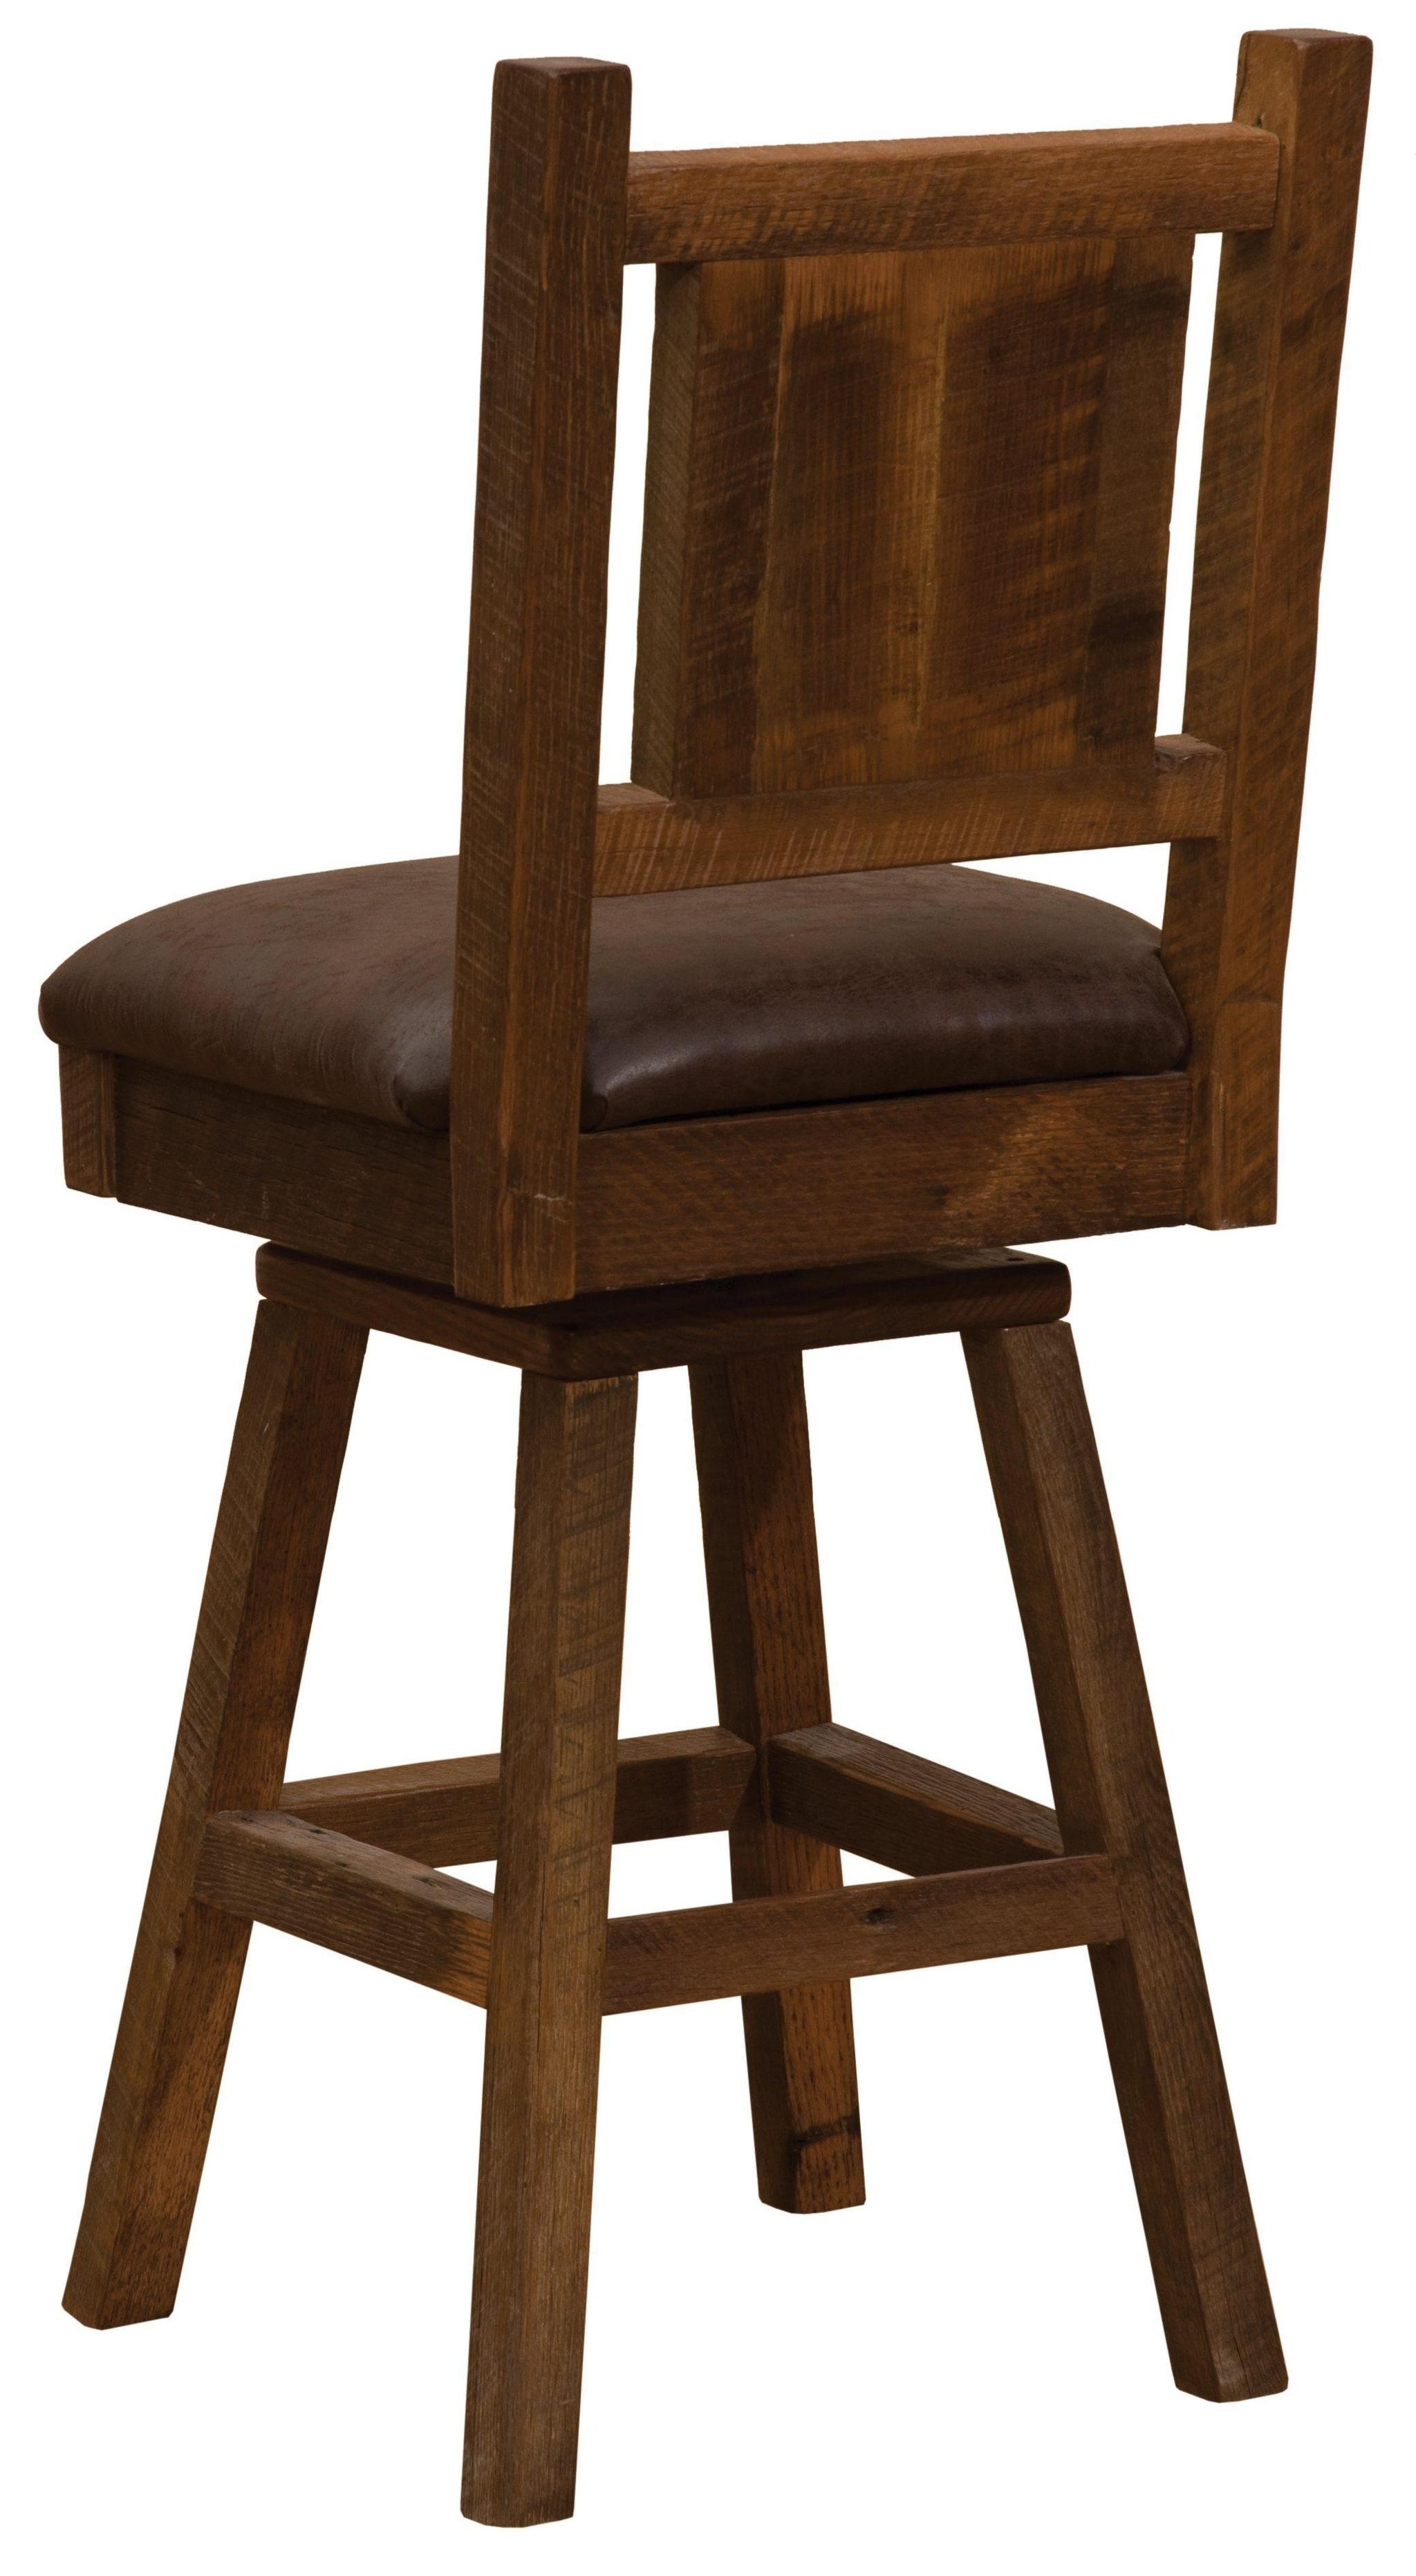 Barnwood swivel upholstered bar stool with back 30 seat